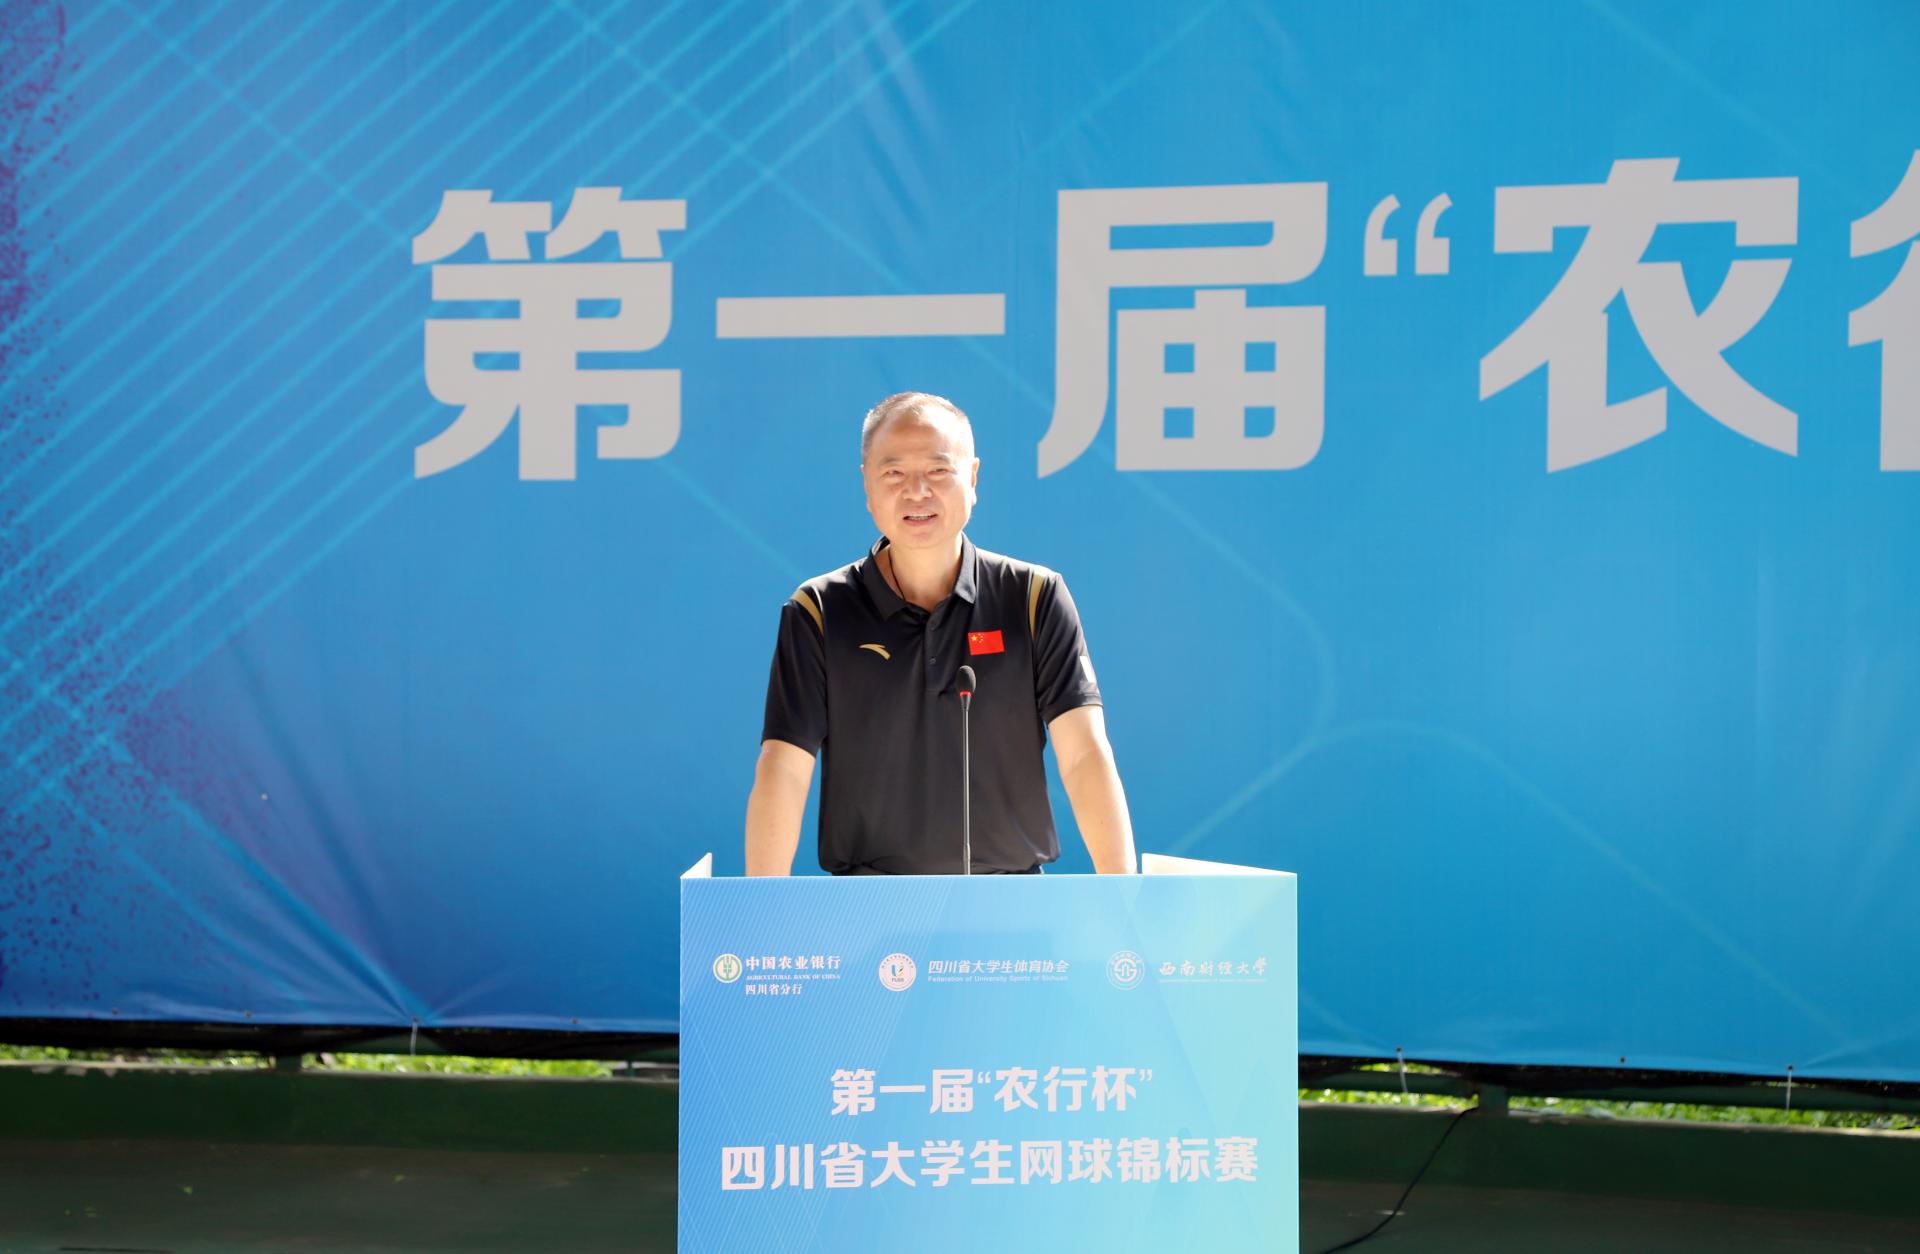 第一届“农行杯”四川省大学生网球锦标赛在西南财经大学圆满落幕